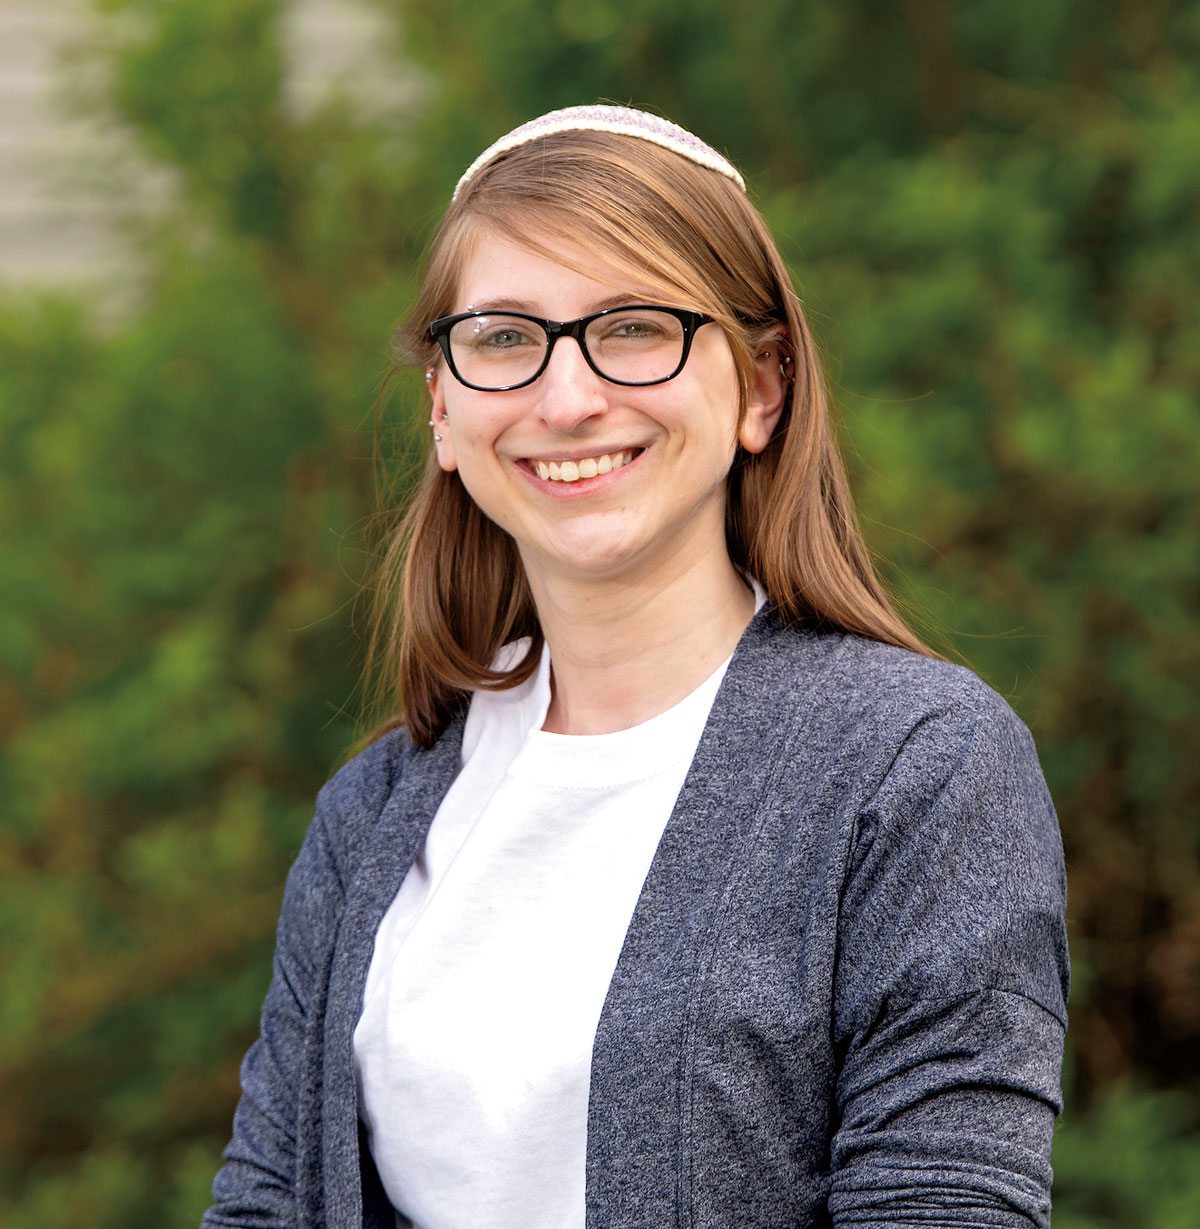 Rabbi Jessica Goldberg